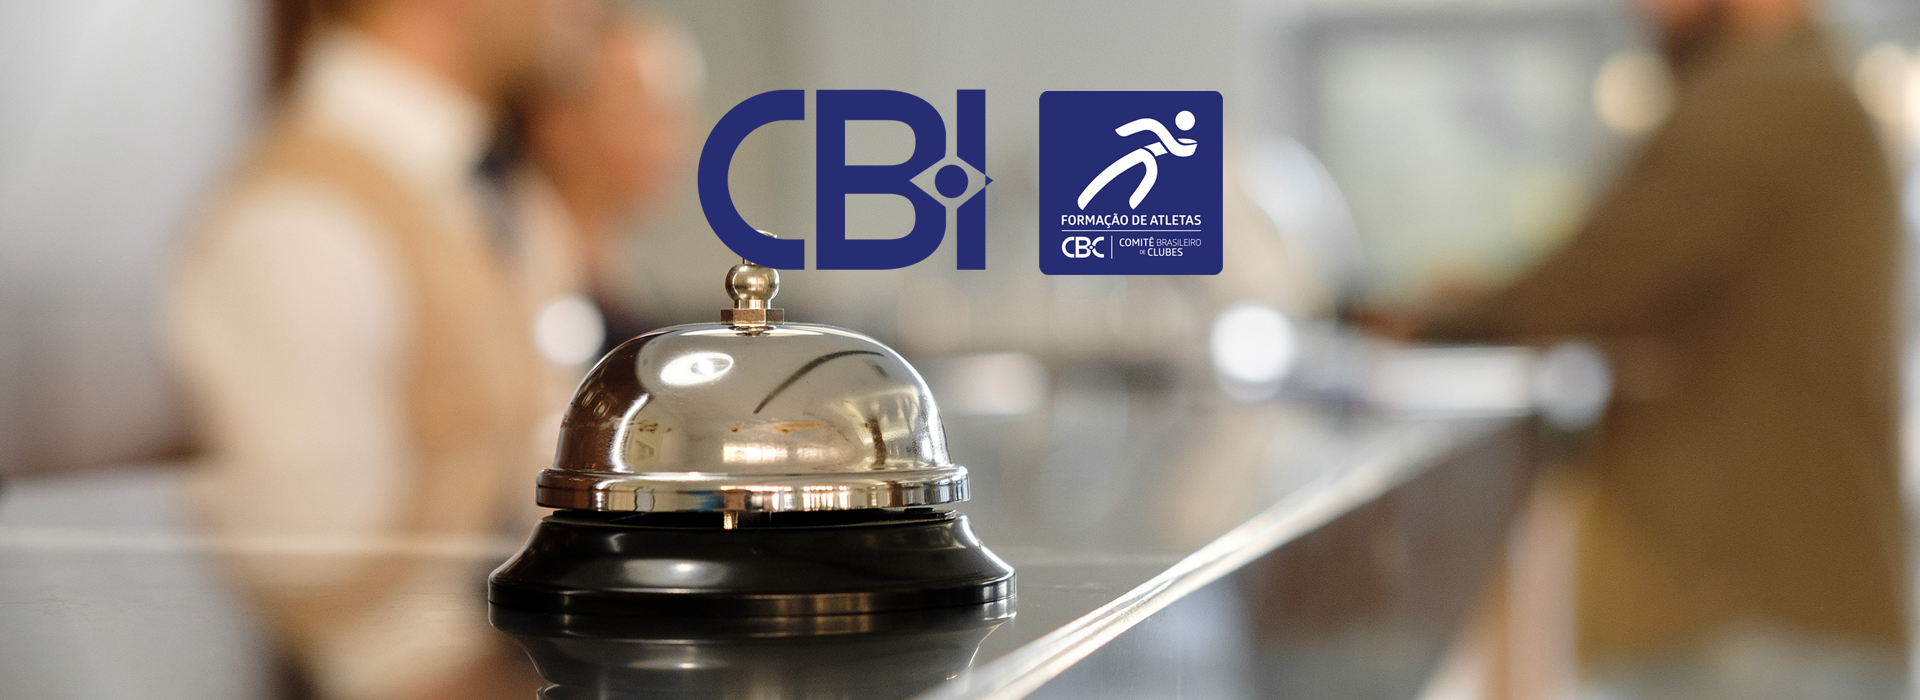 Mais uma rede hoteleira do país fecha parceria com o CBC